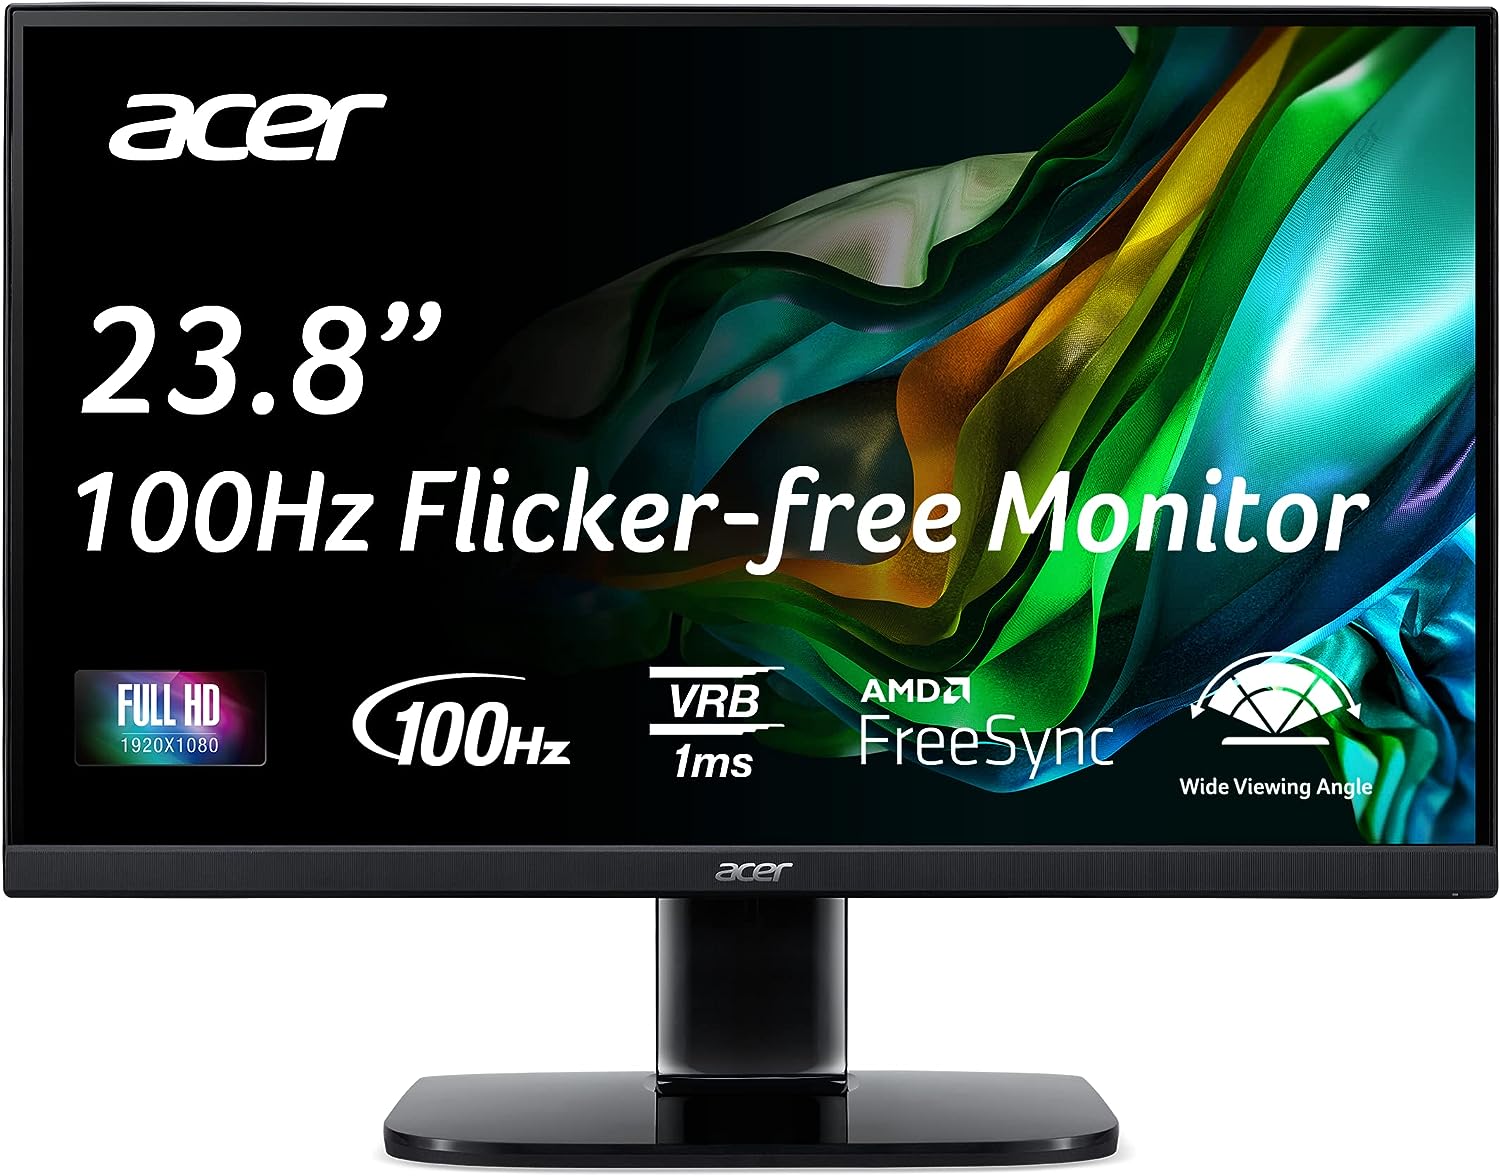 Acer KC242Y Hbi 23.8" Full HD (1920 x 1080) Monitor de oficina para juegos de marco cero | Tecnología AMD FreeSync | 100Hz | 1 ms (VRB) | Luz azul baja | Inclinación | Puertos HDMI y VGA, negro